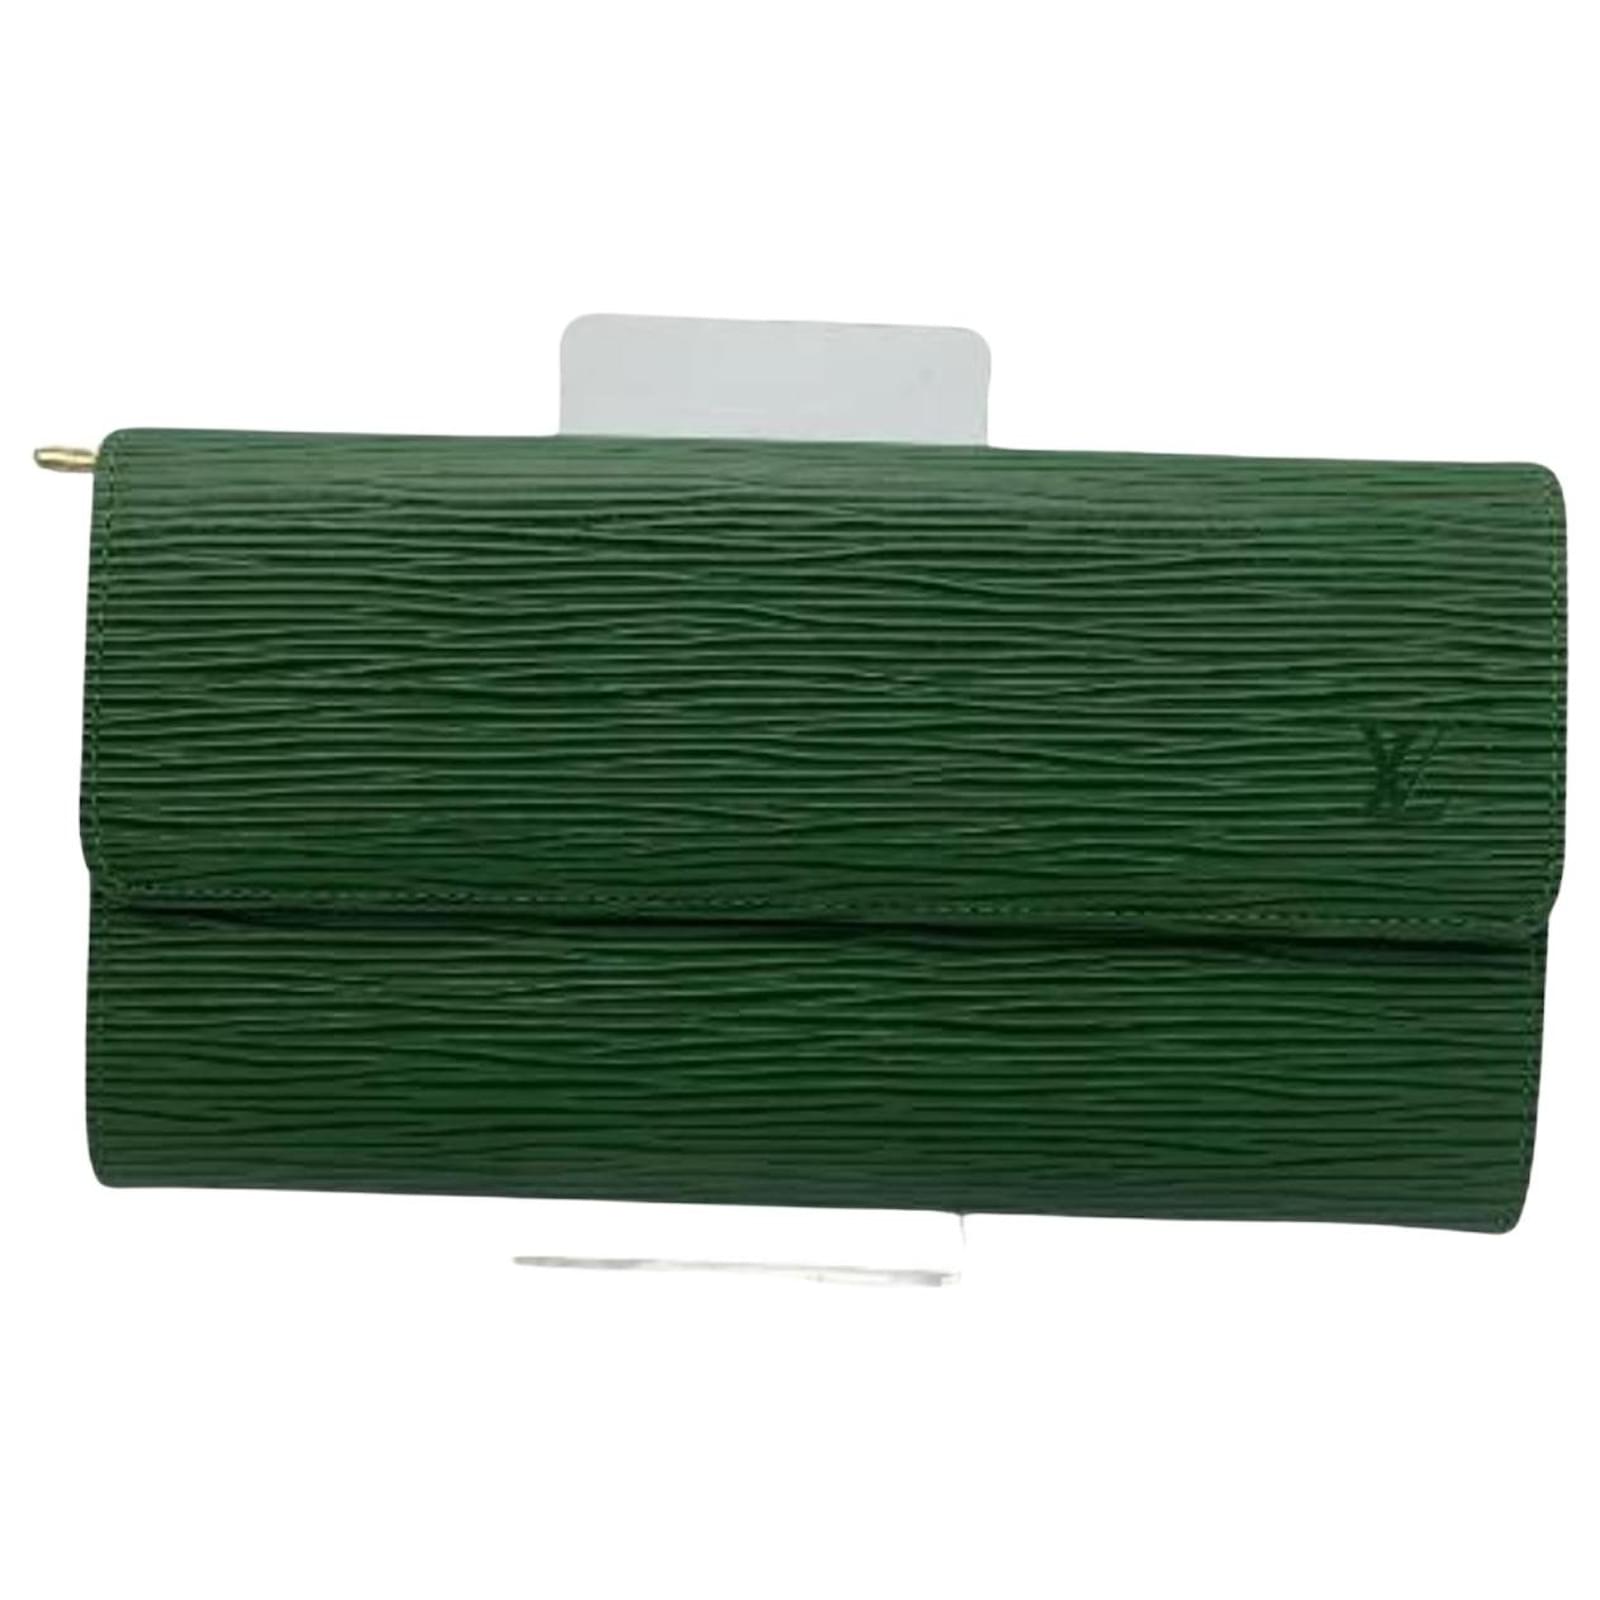 Louis Vuitton Green Epi Leather Porte-Monnaie Tresor Wallet For